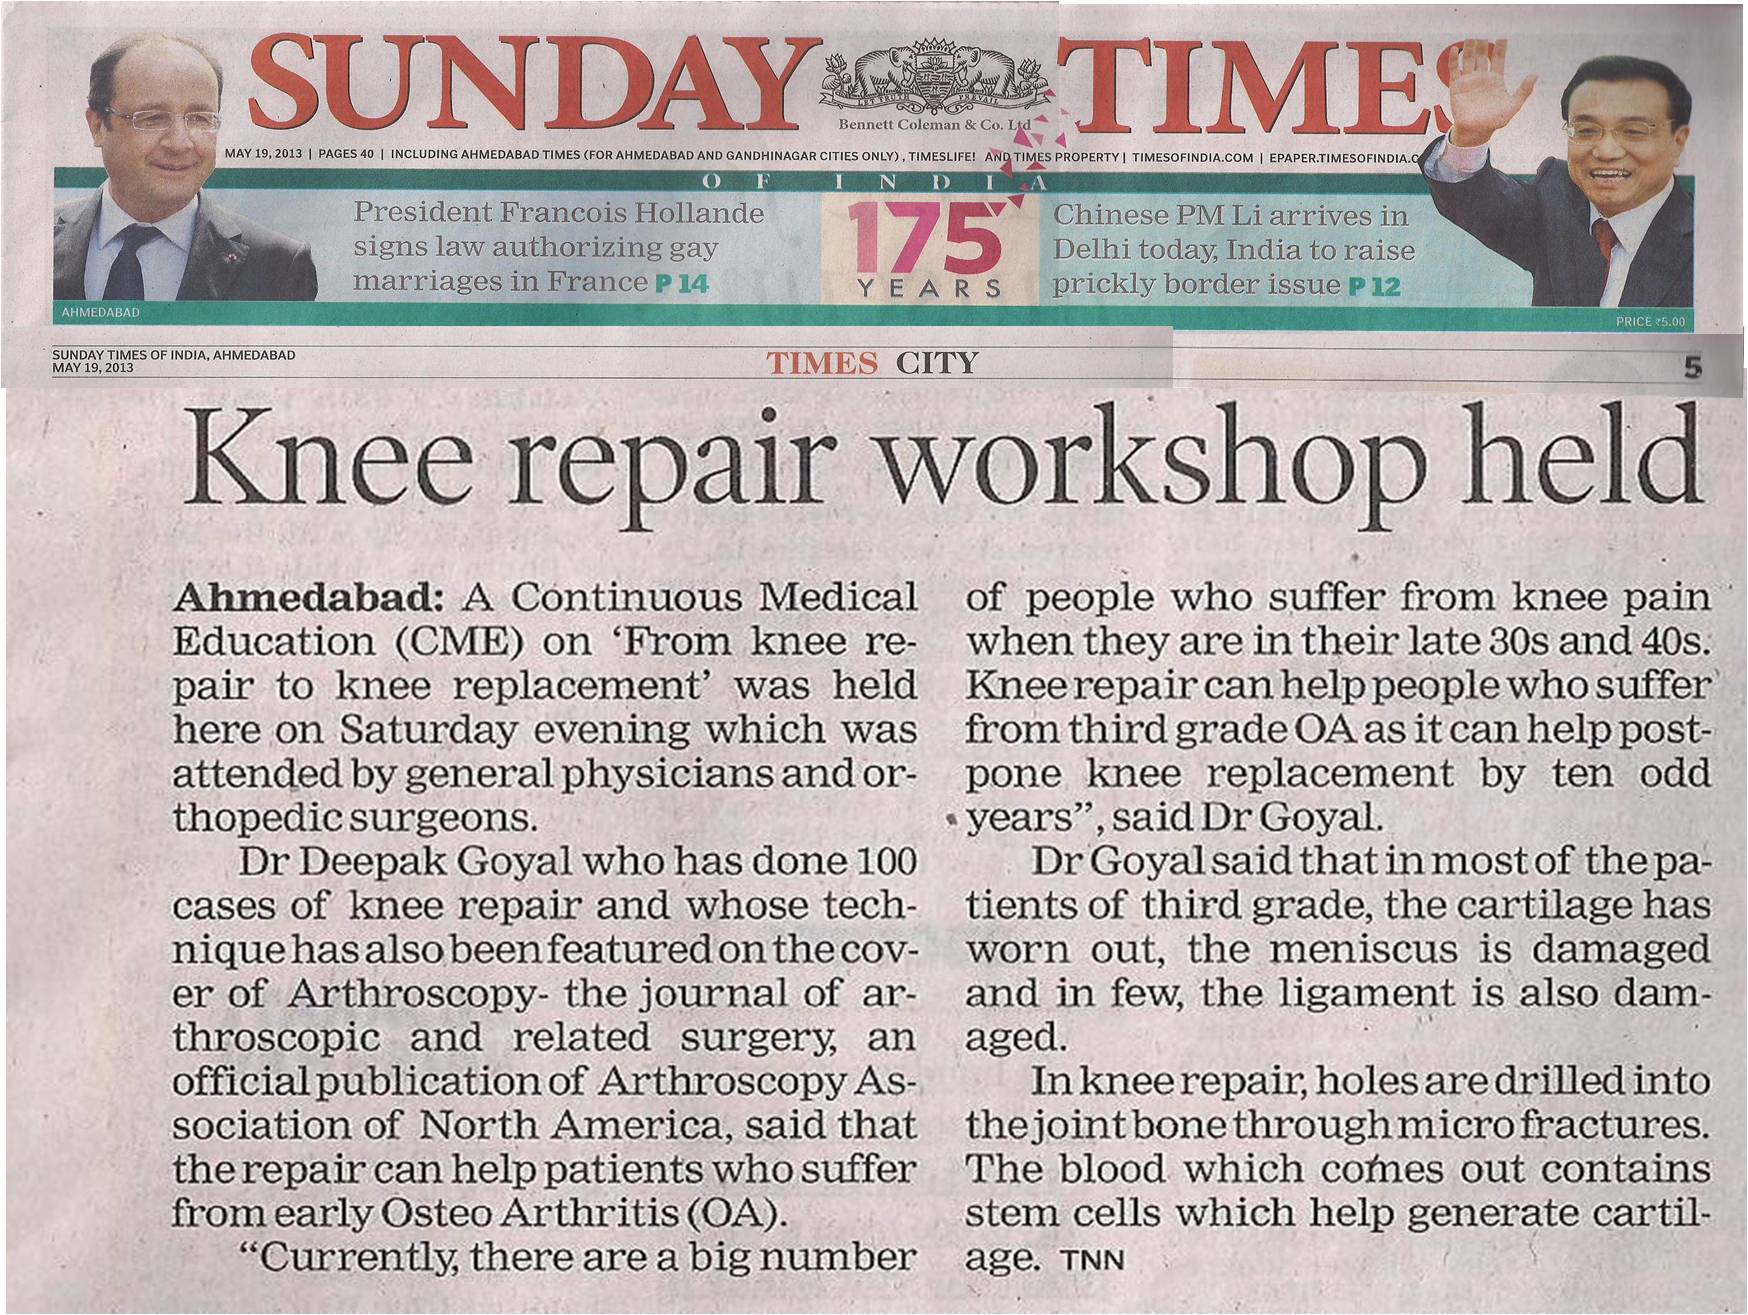 Knee Repair and Deepak Goyal